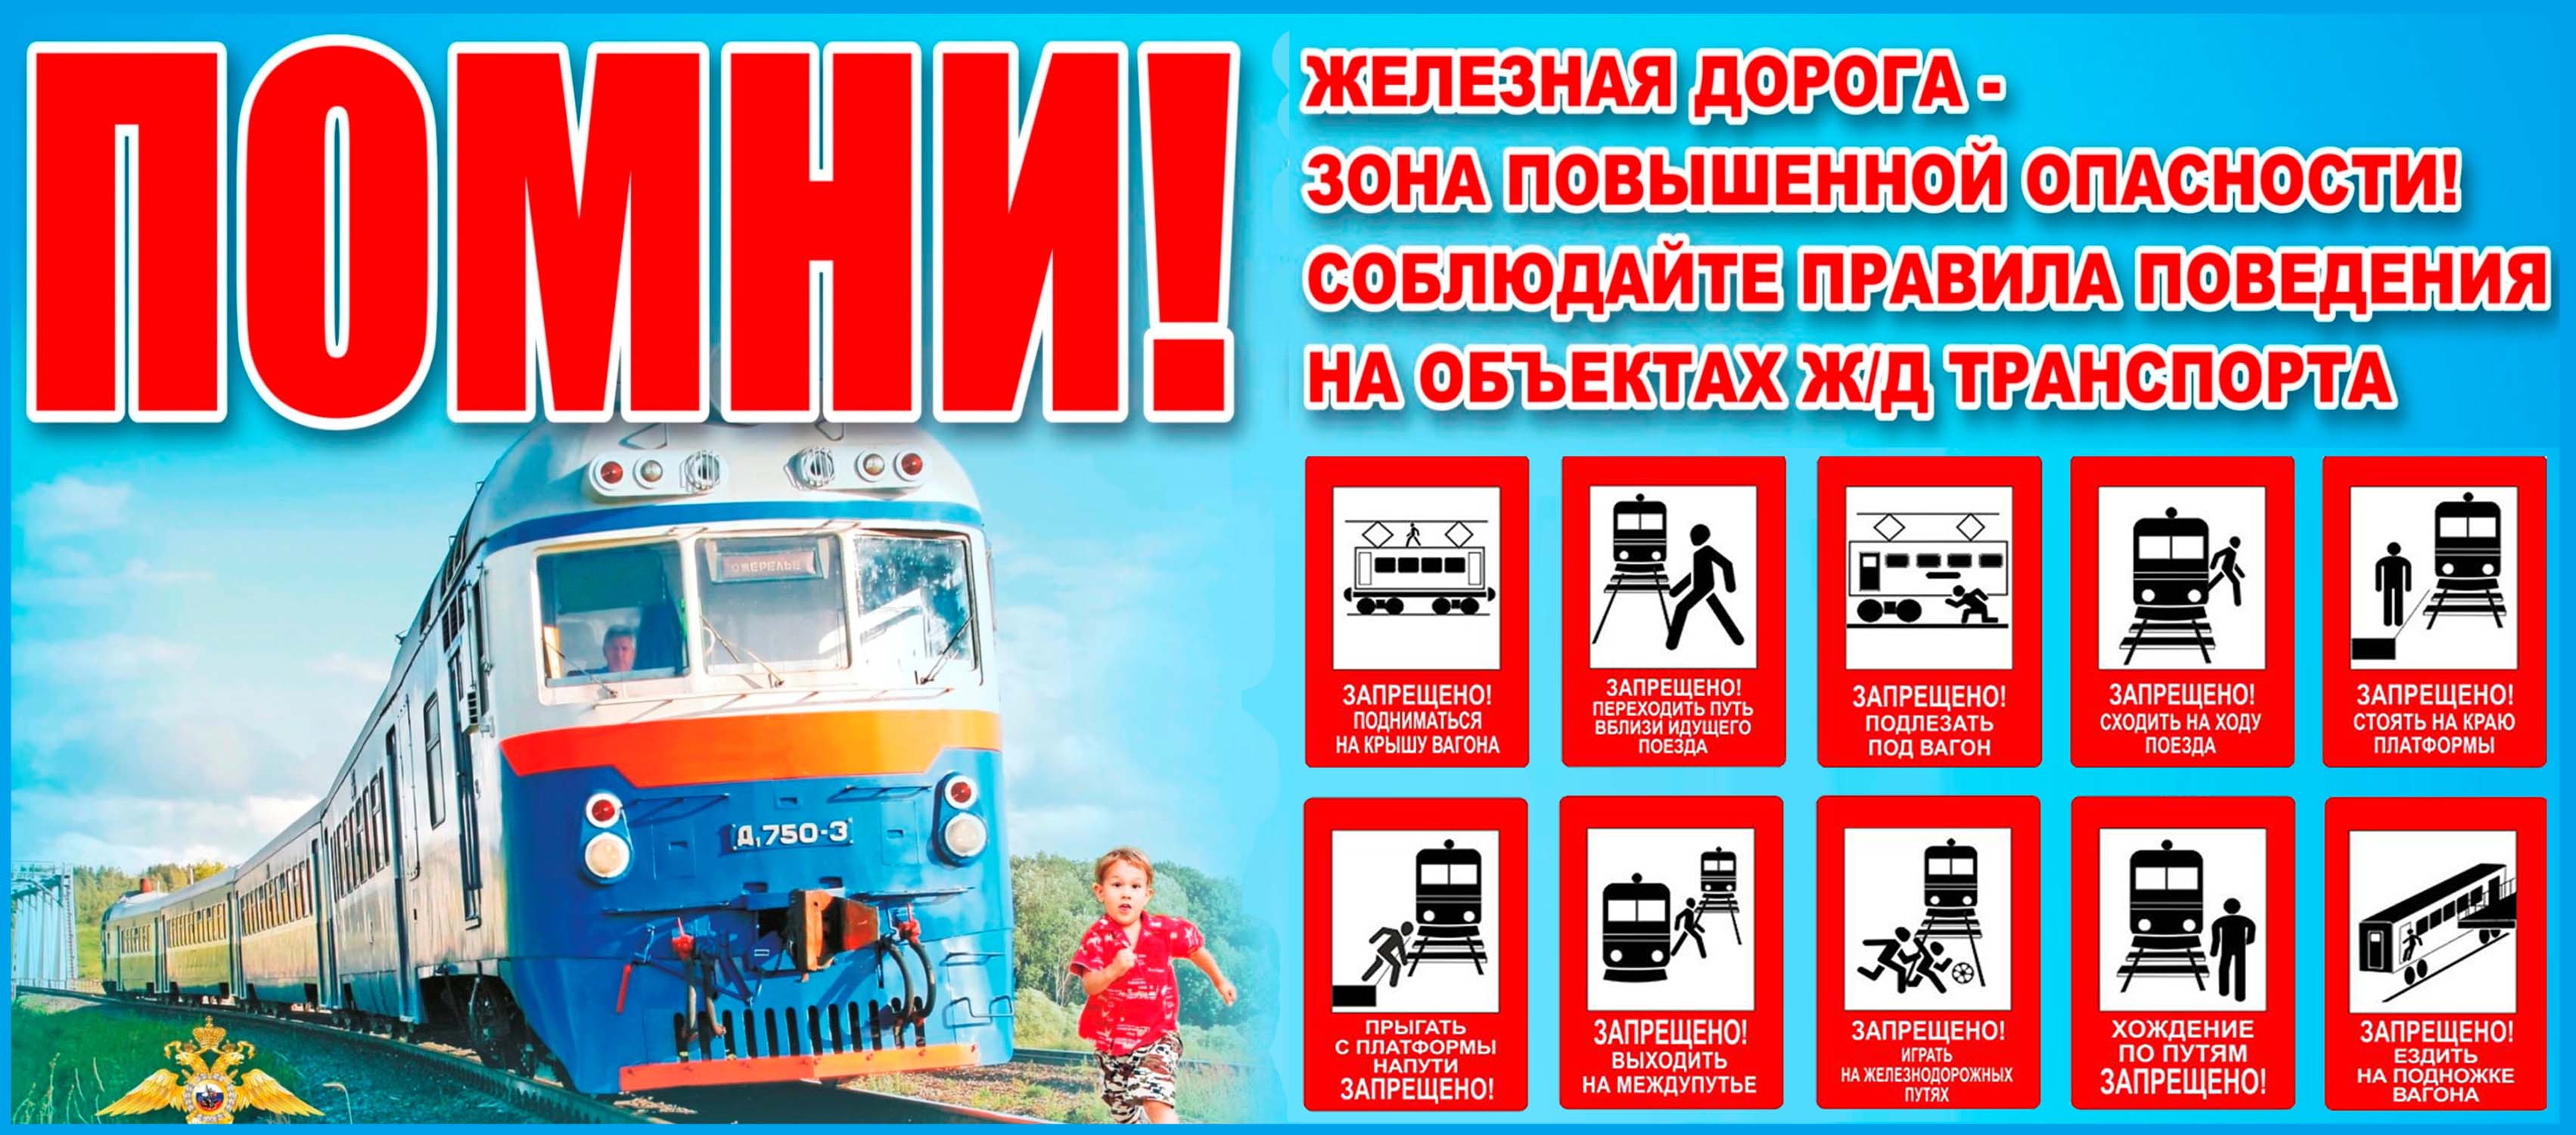 Курская транспортная прокуратура разъясняет правила поведения граждан на железнодорожном транспорте..